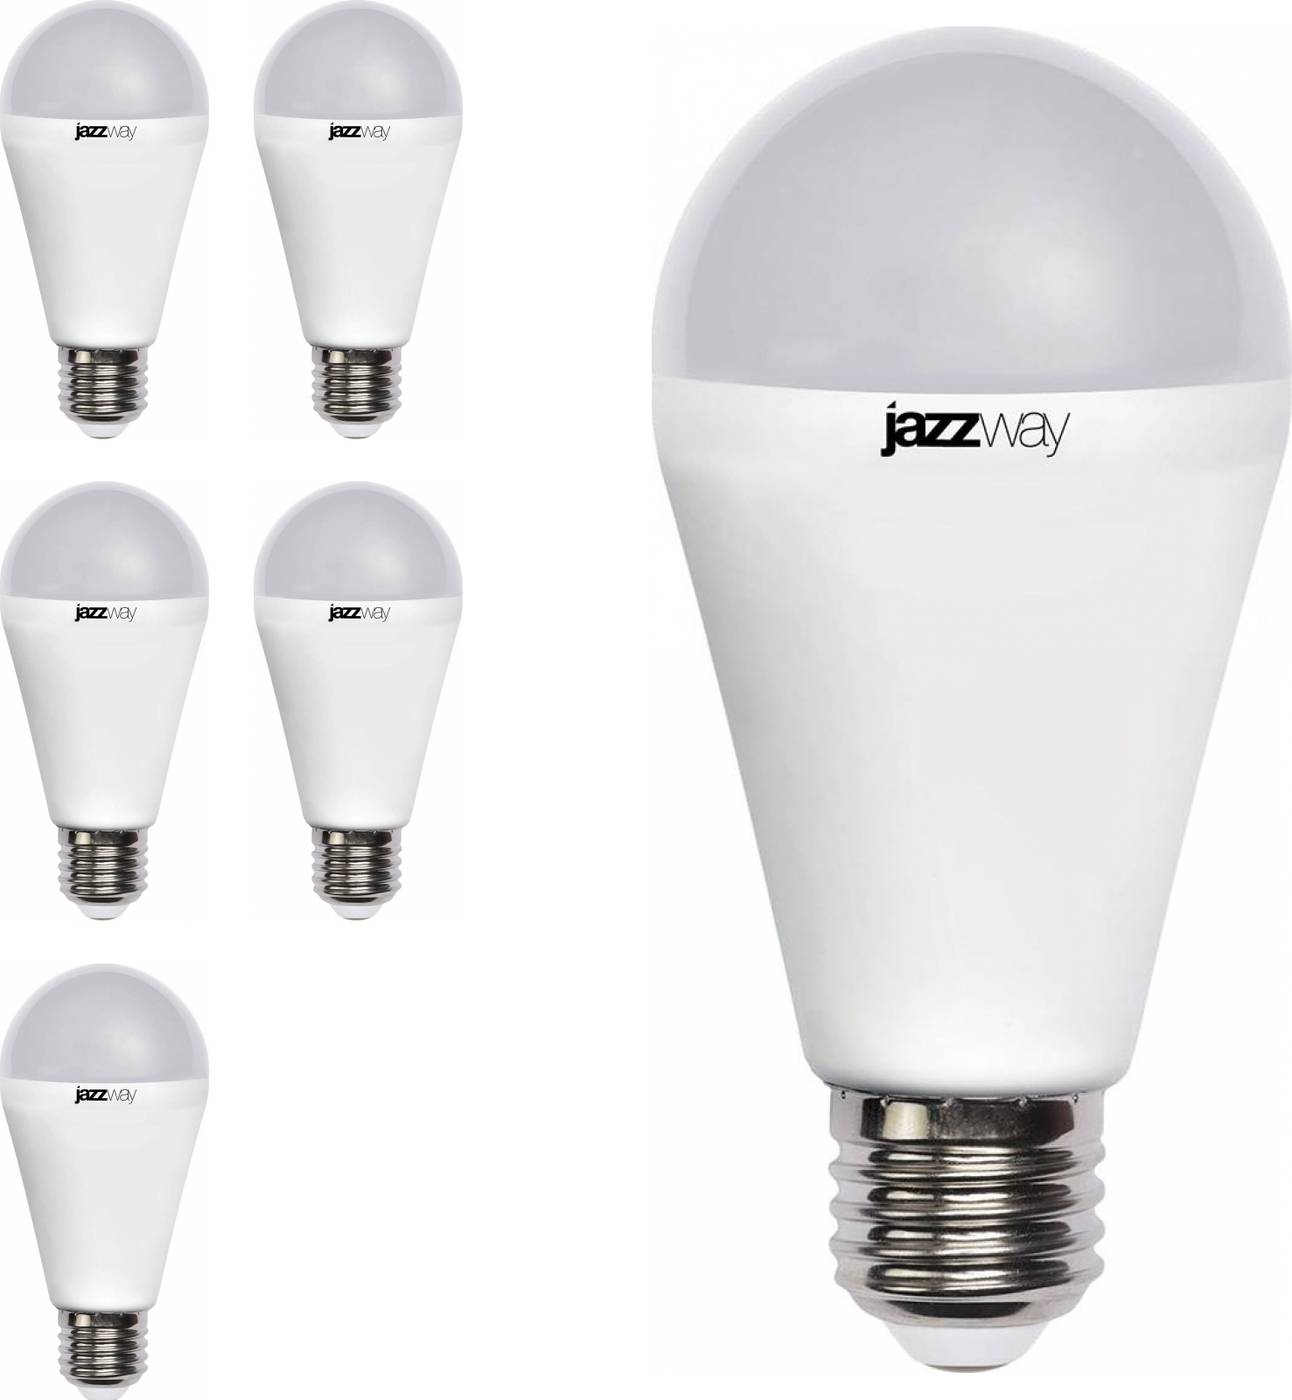 Светодиодные лампы jazzway: отзывы